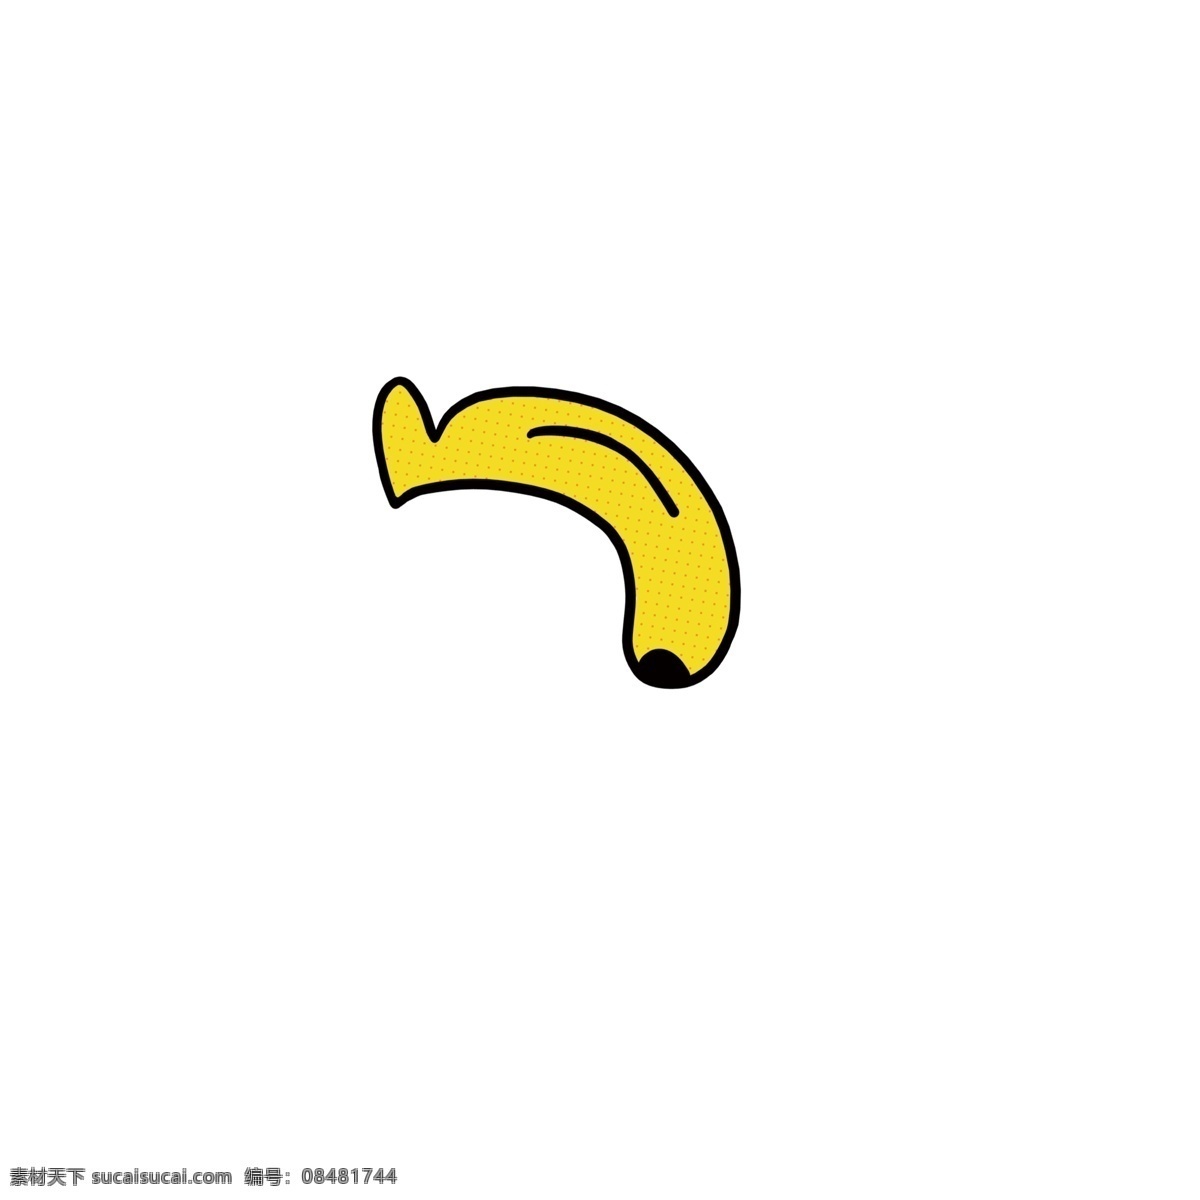 可爱 卡通 夏天 香蕉 手绘 食物 图标 元素 美食 装饰 黄 水果 设计素材 小吃 野餐 甜食 q版